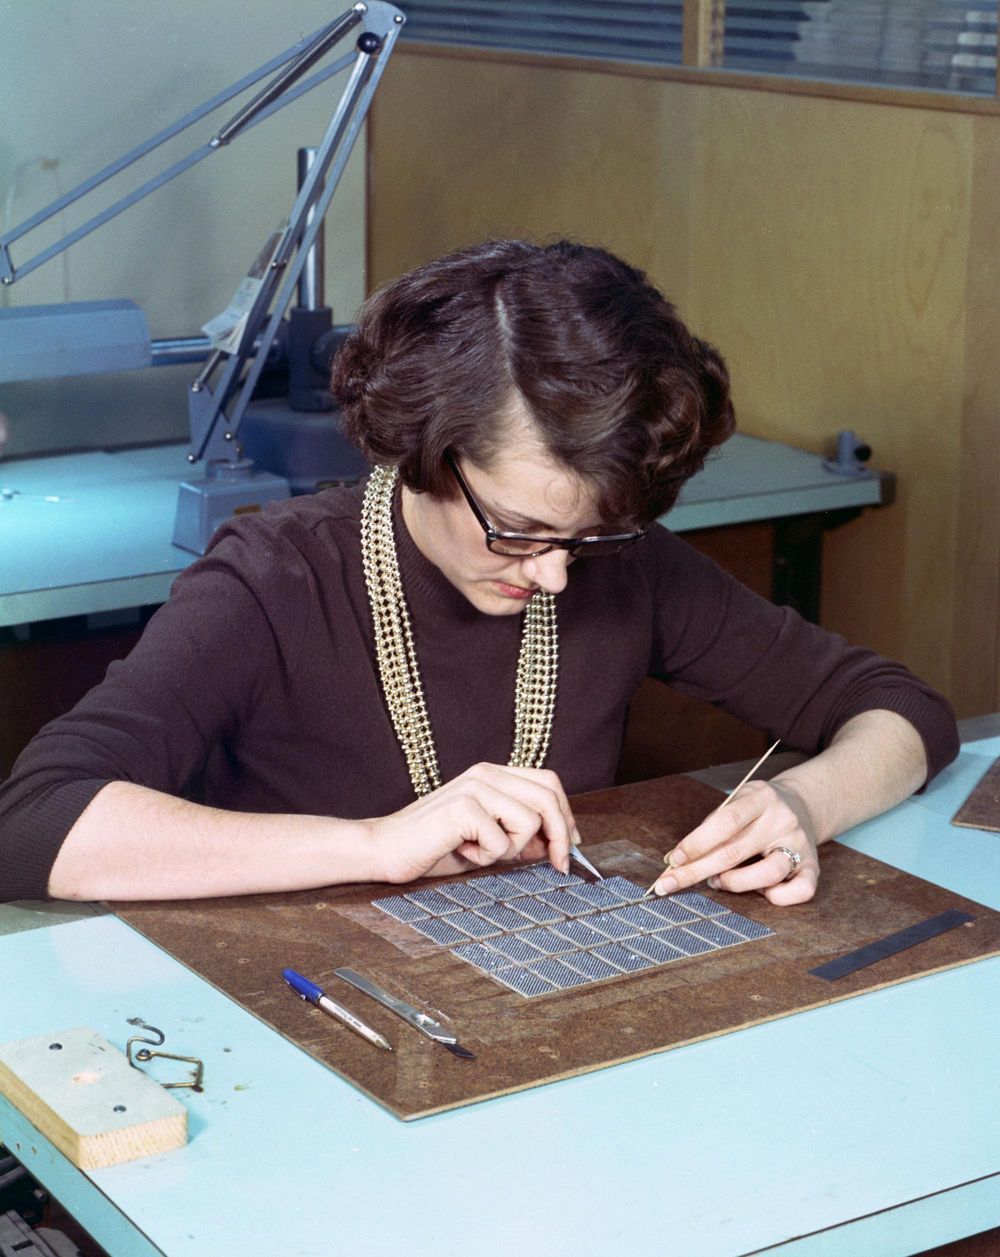 Một phụ nữ đang xâu các bộ phận của bộ nhớ trên máy tính Apollo Guidance Computer. Ảnh: Wikimedia Commons.